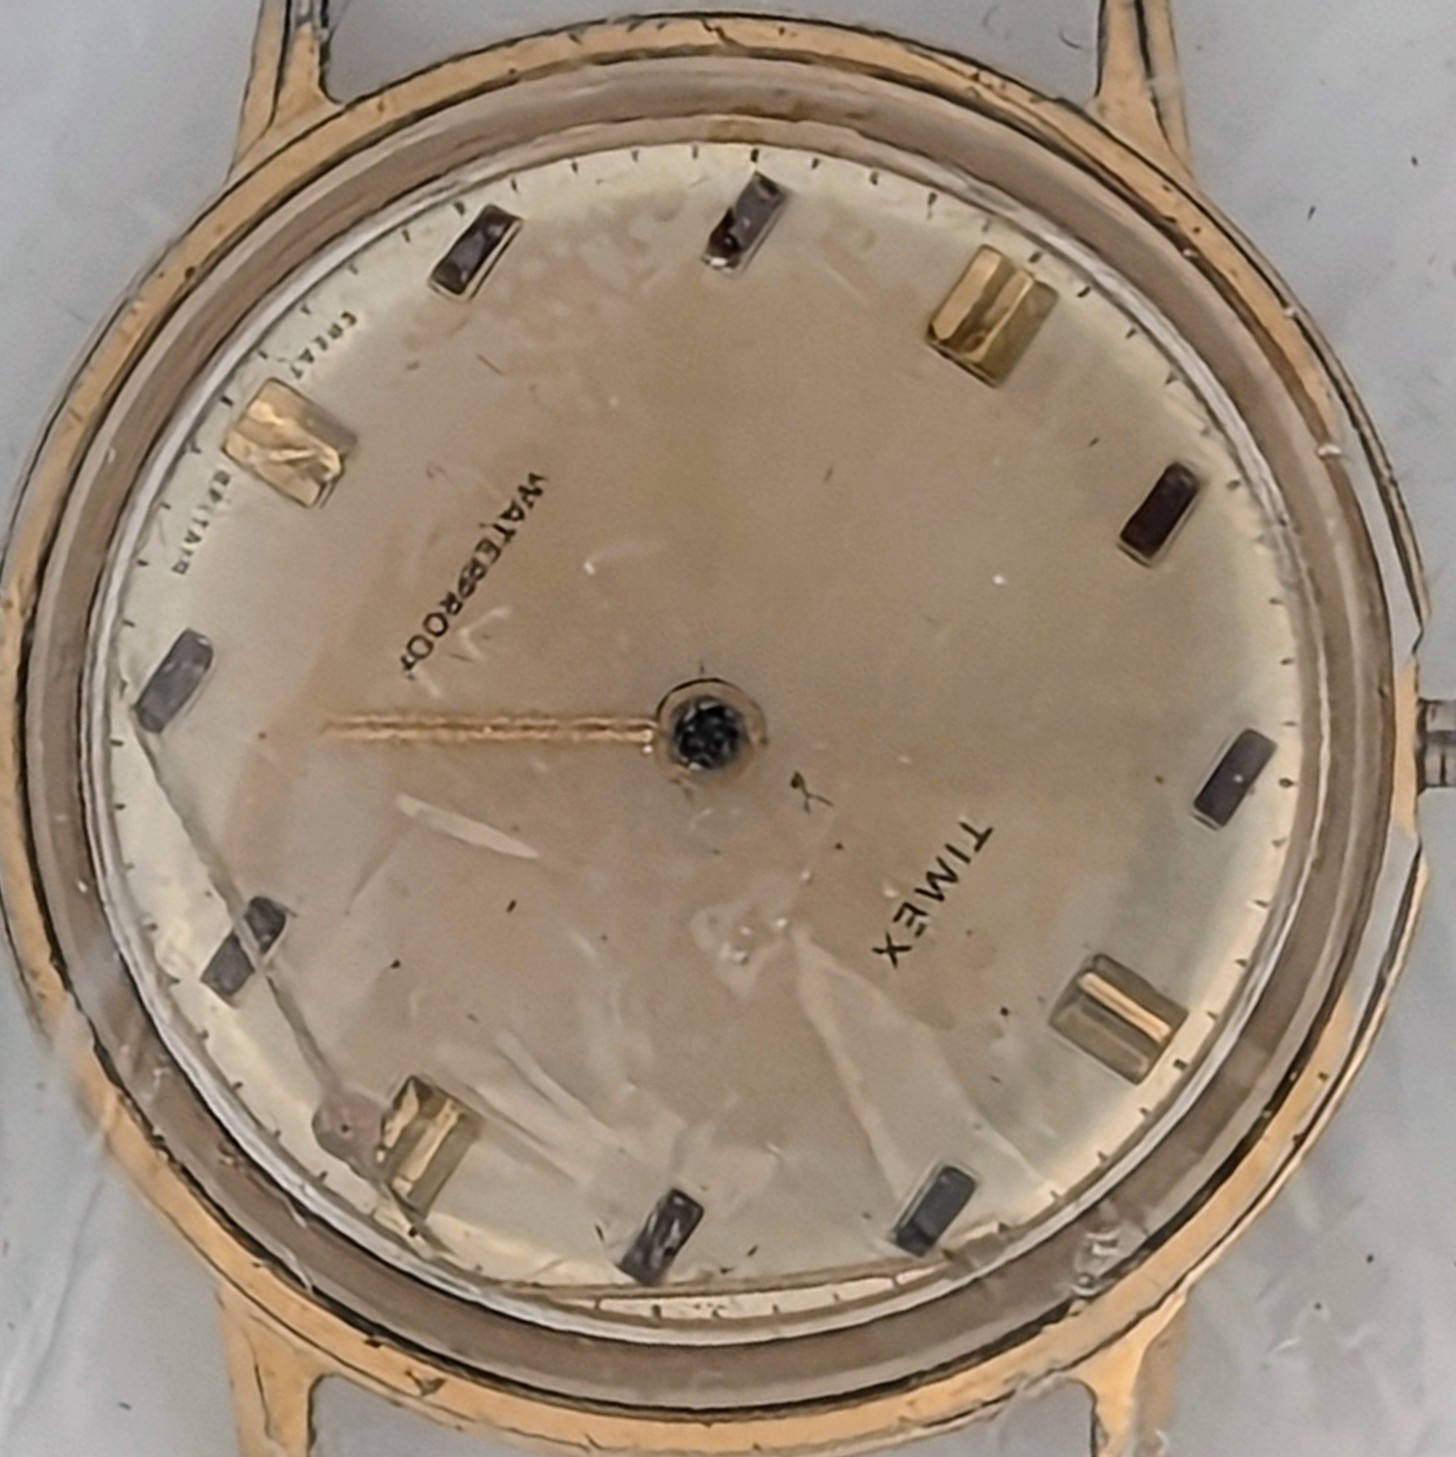 Timex Marlin 1972 Ref. 26060 2472